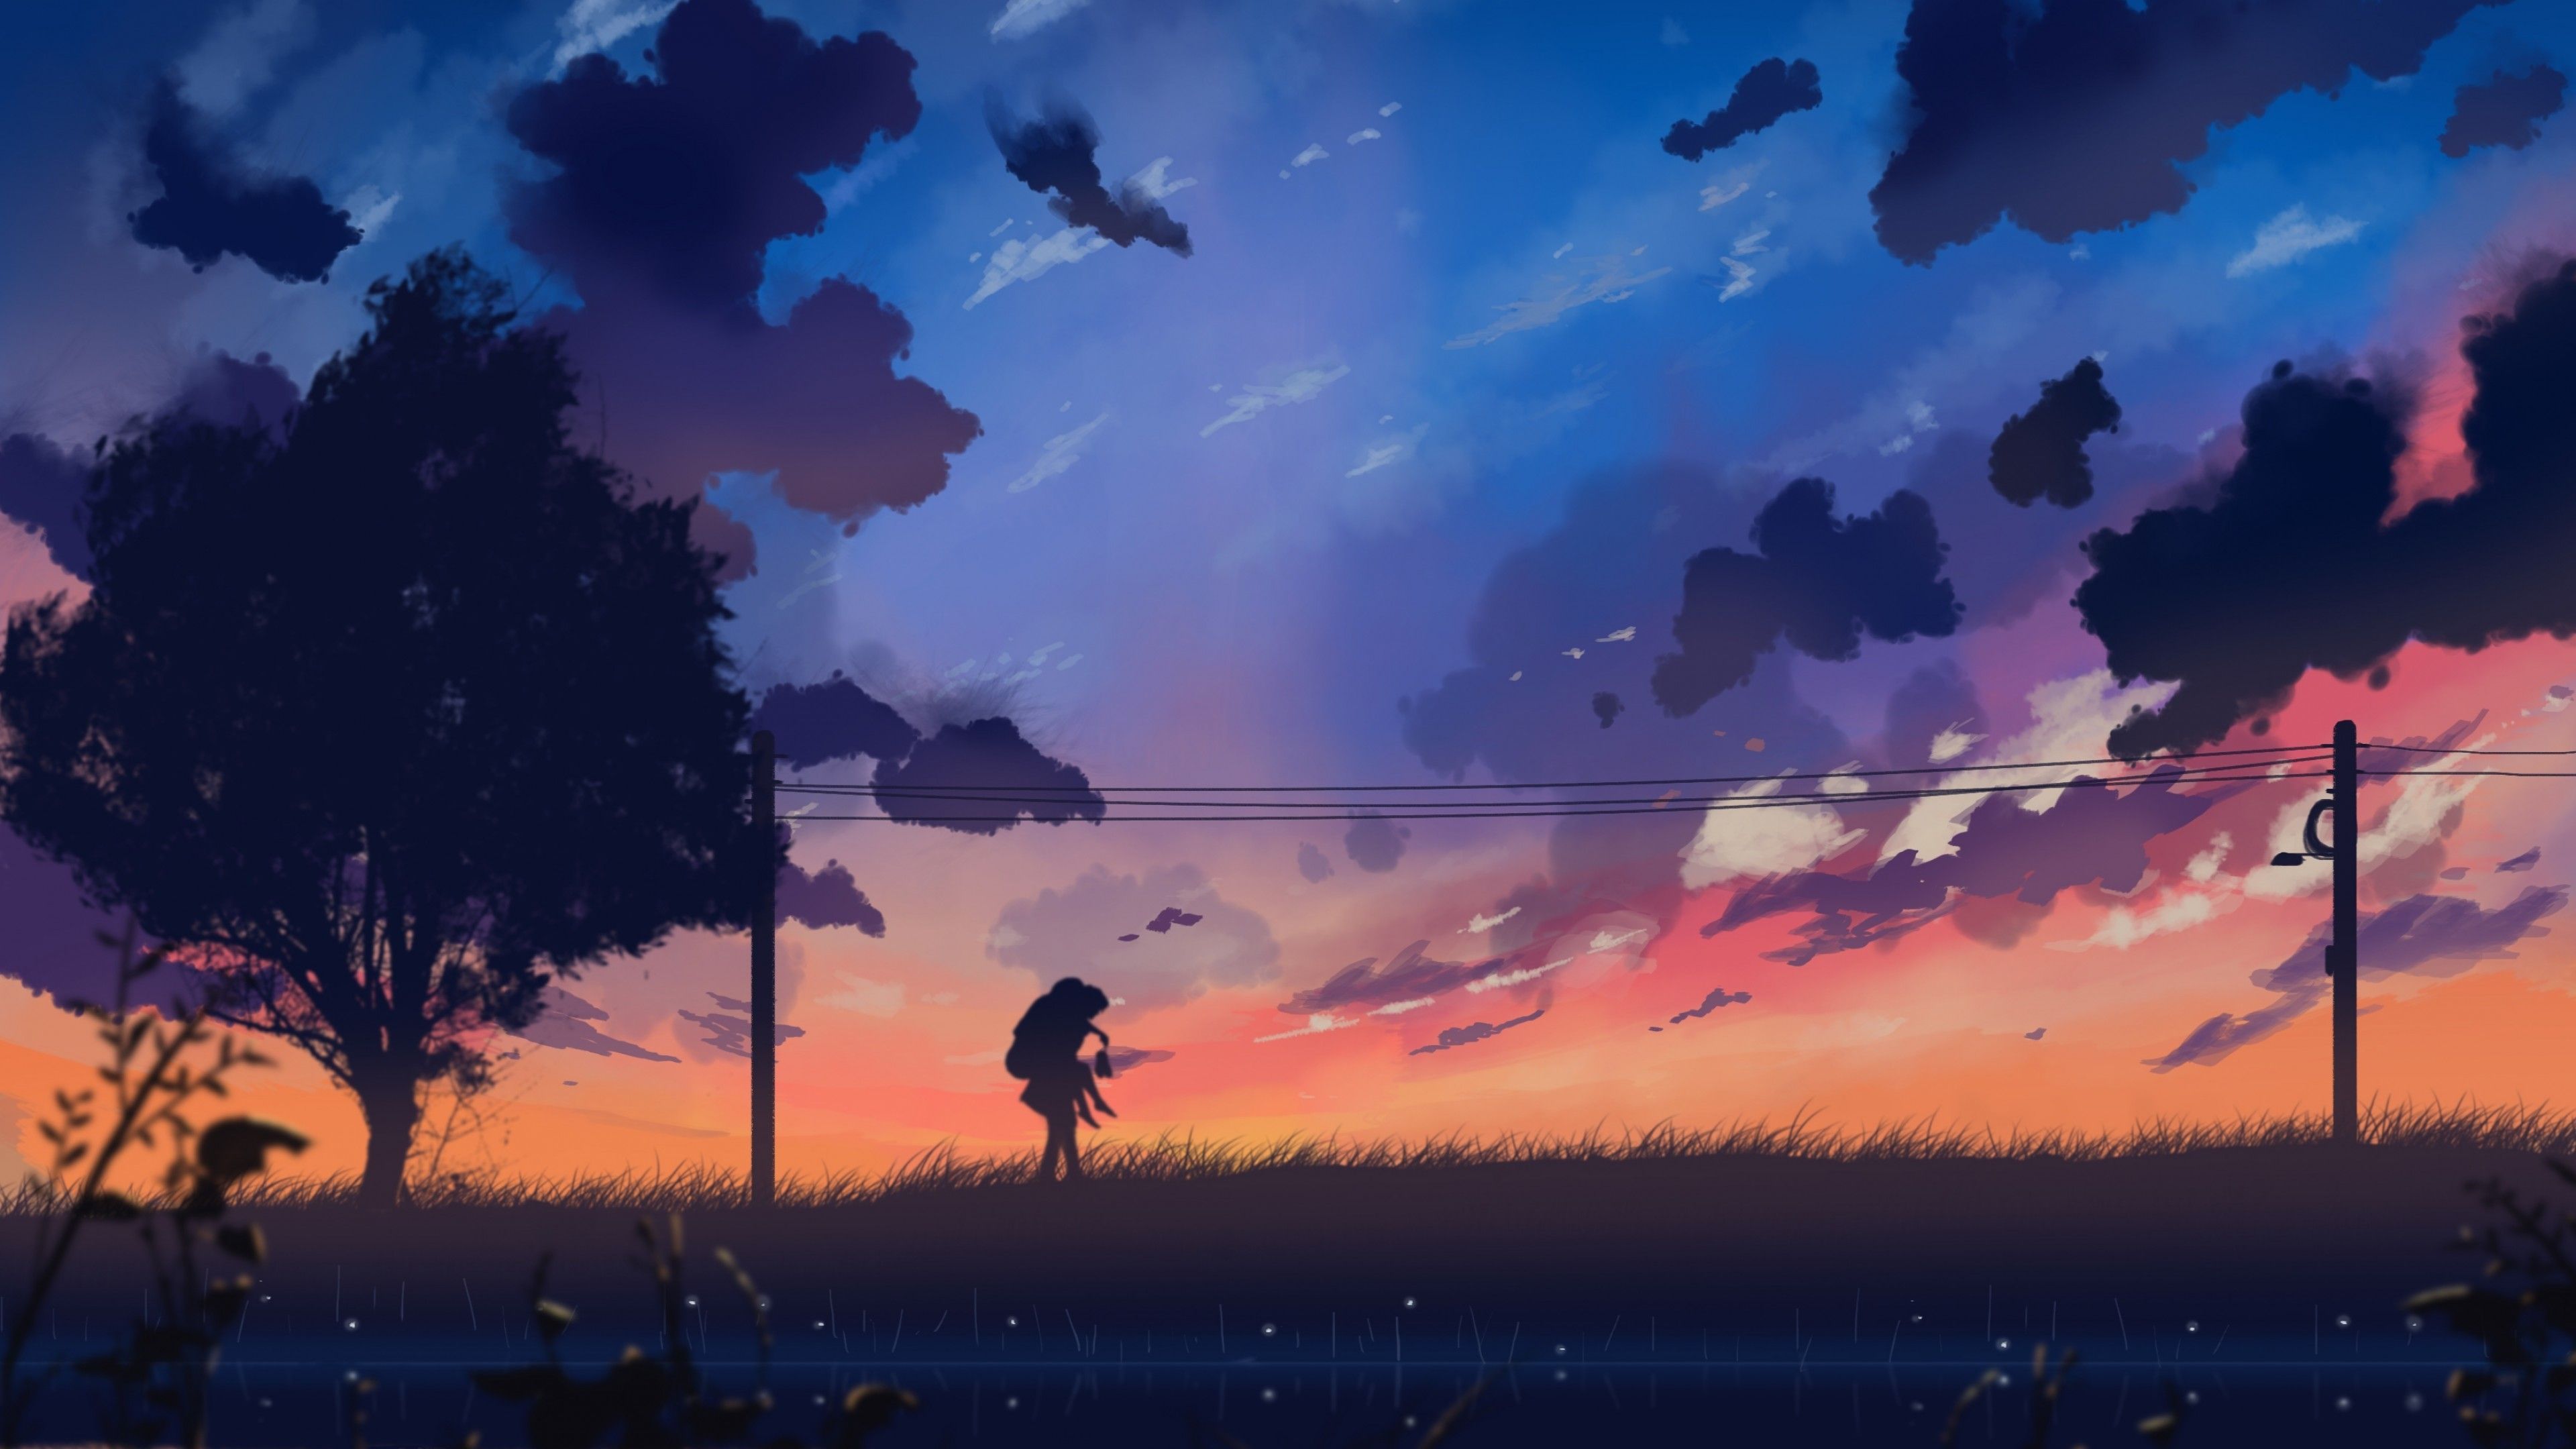 Anime Aesthetic Background Landscape Pastel